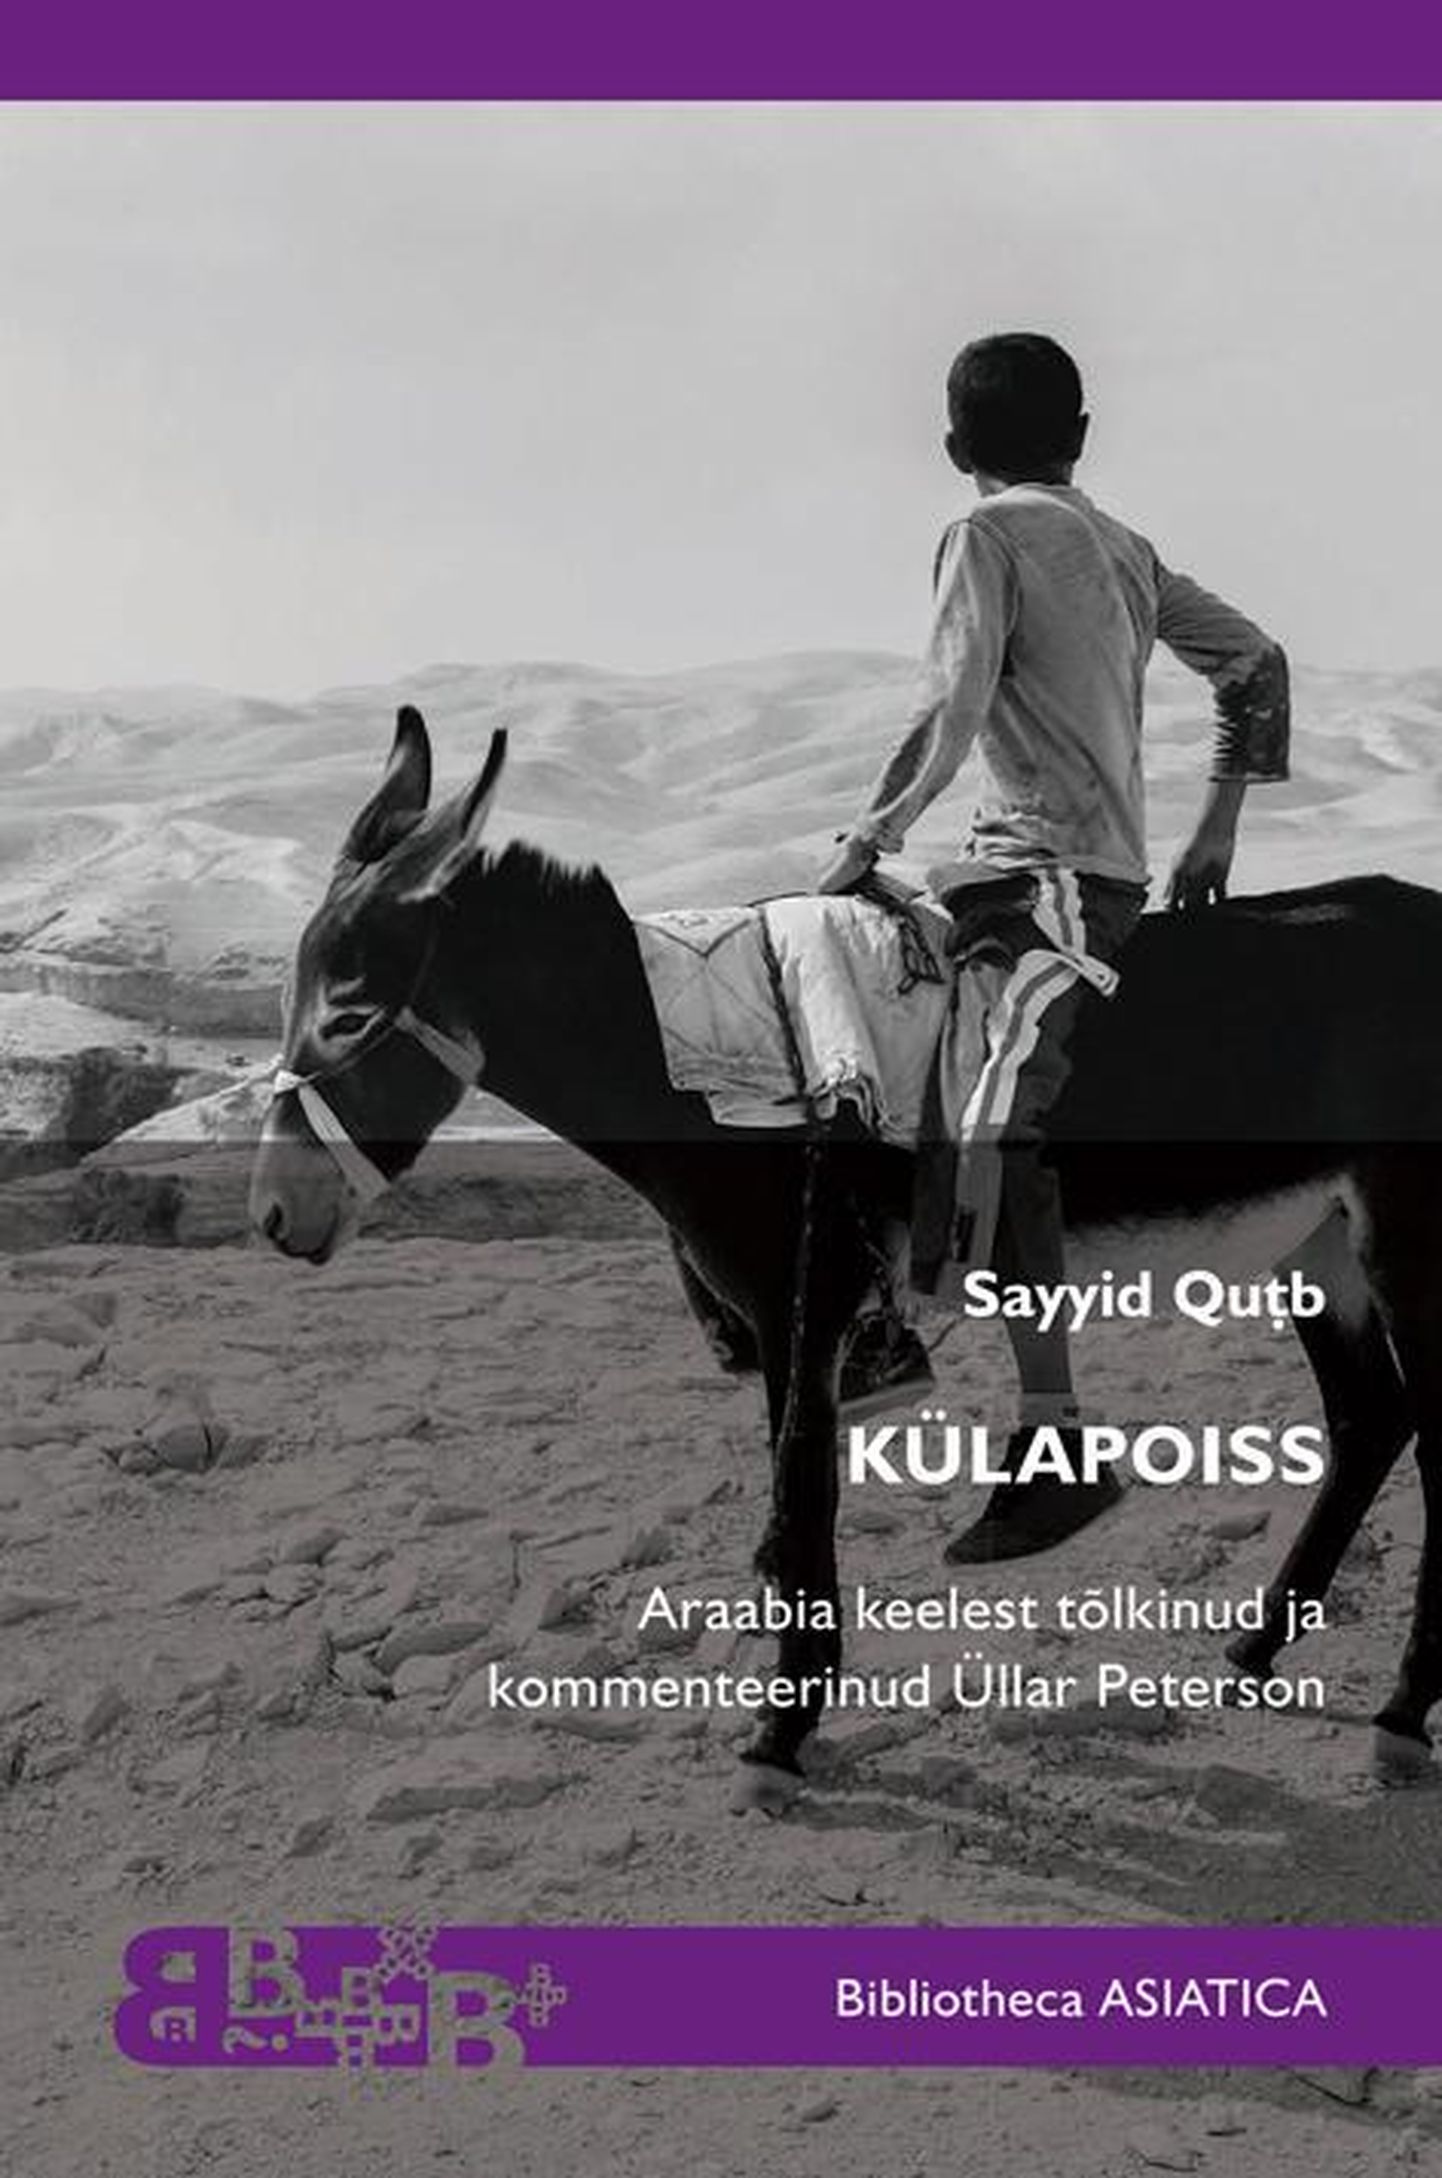 Sayyid Qutb, "Külapoiss".